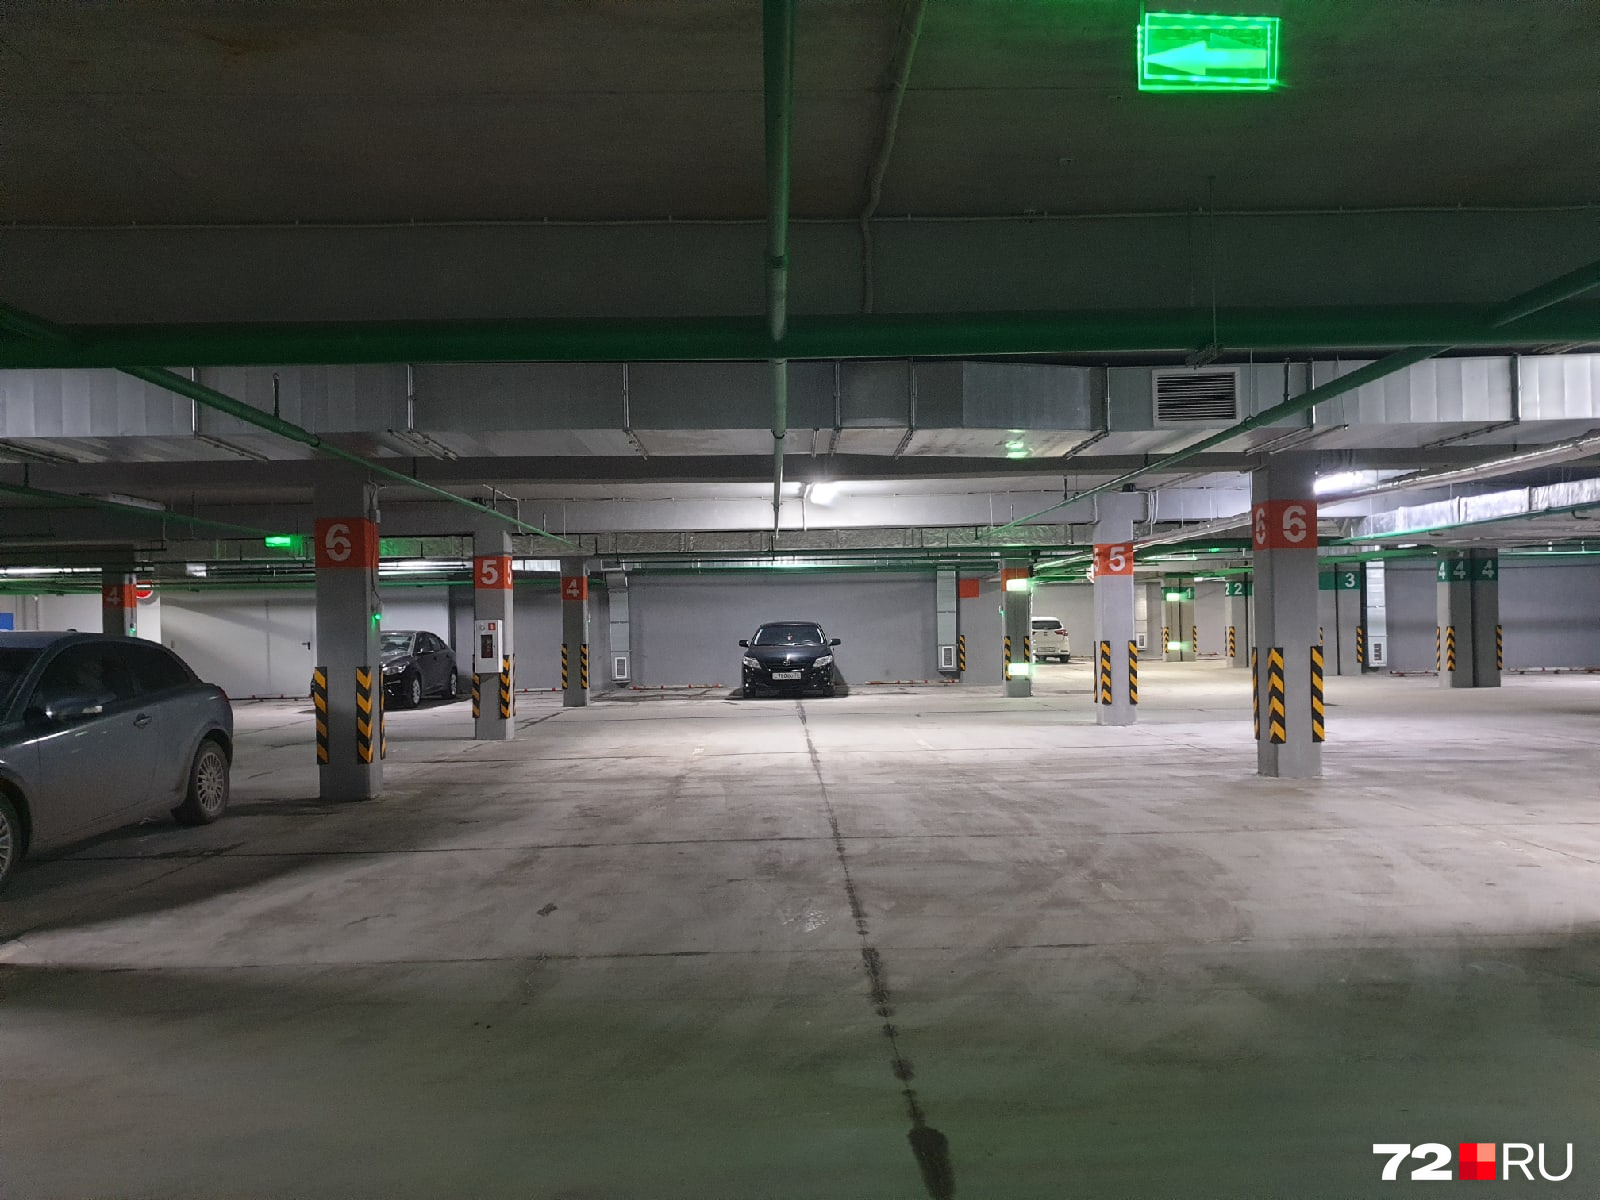 А это подземная парковка. Здесь куча свободных мест